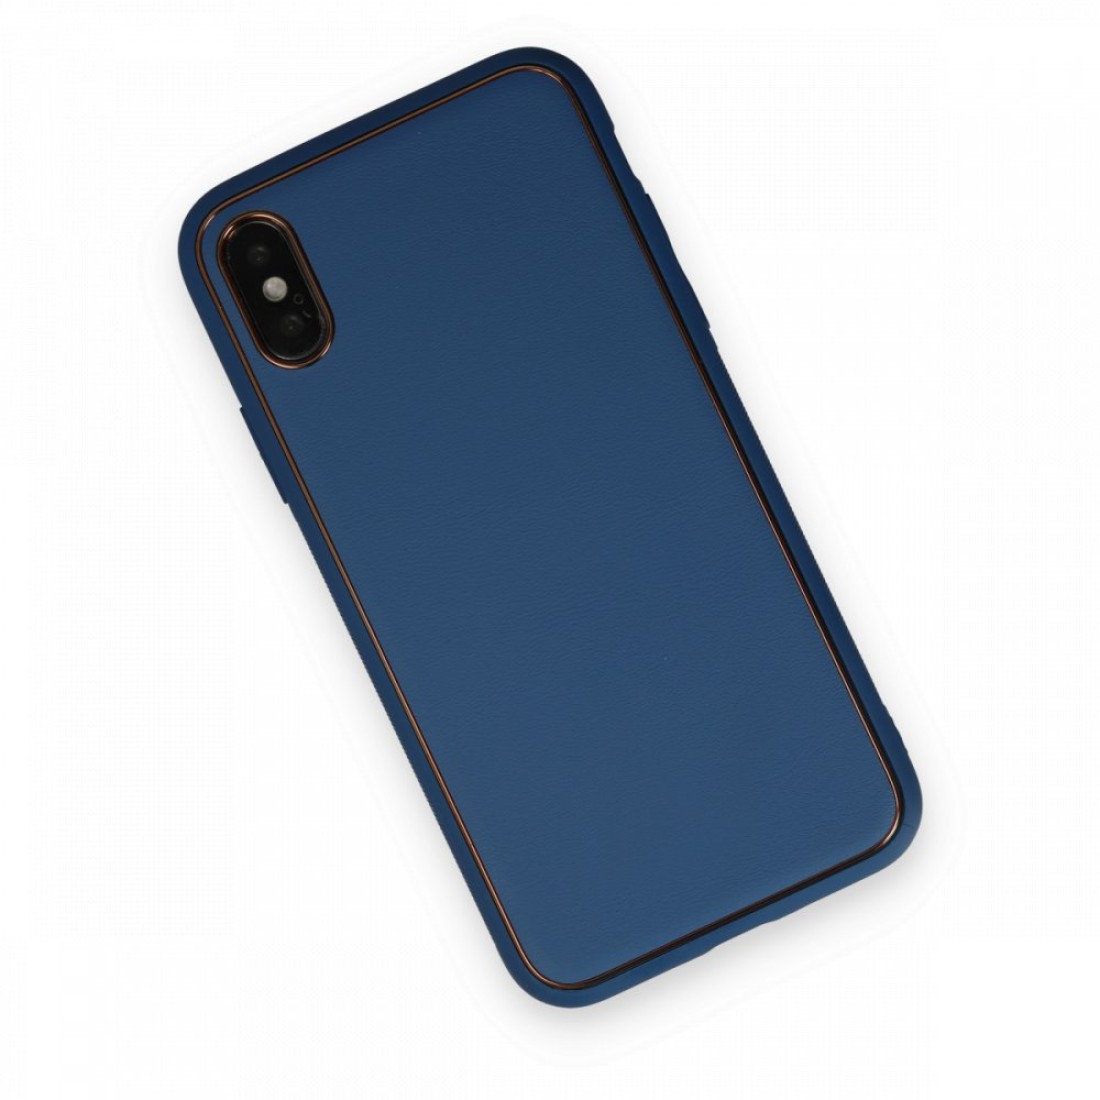 Apple iPhone X Kılıf Coco Deri Silikon Kapak - Açık Mavi